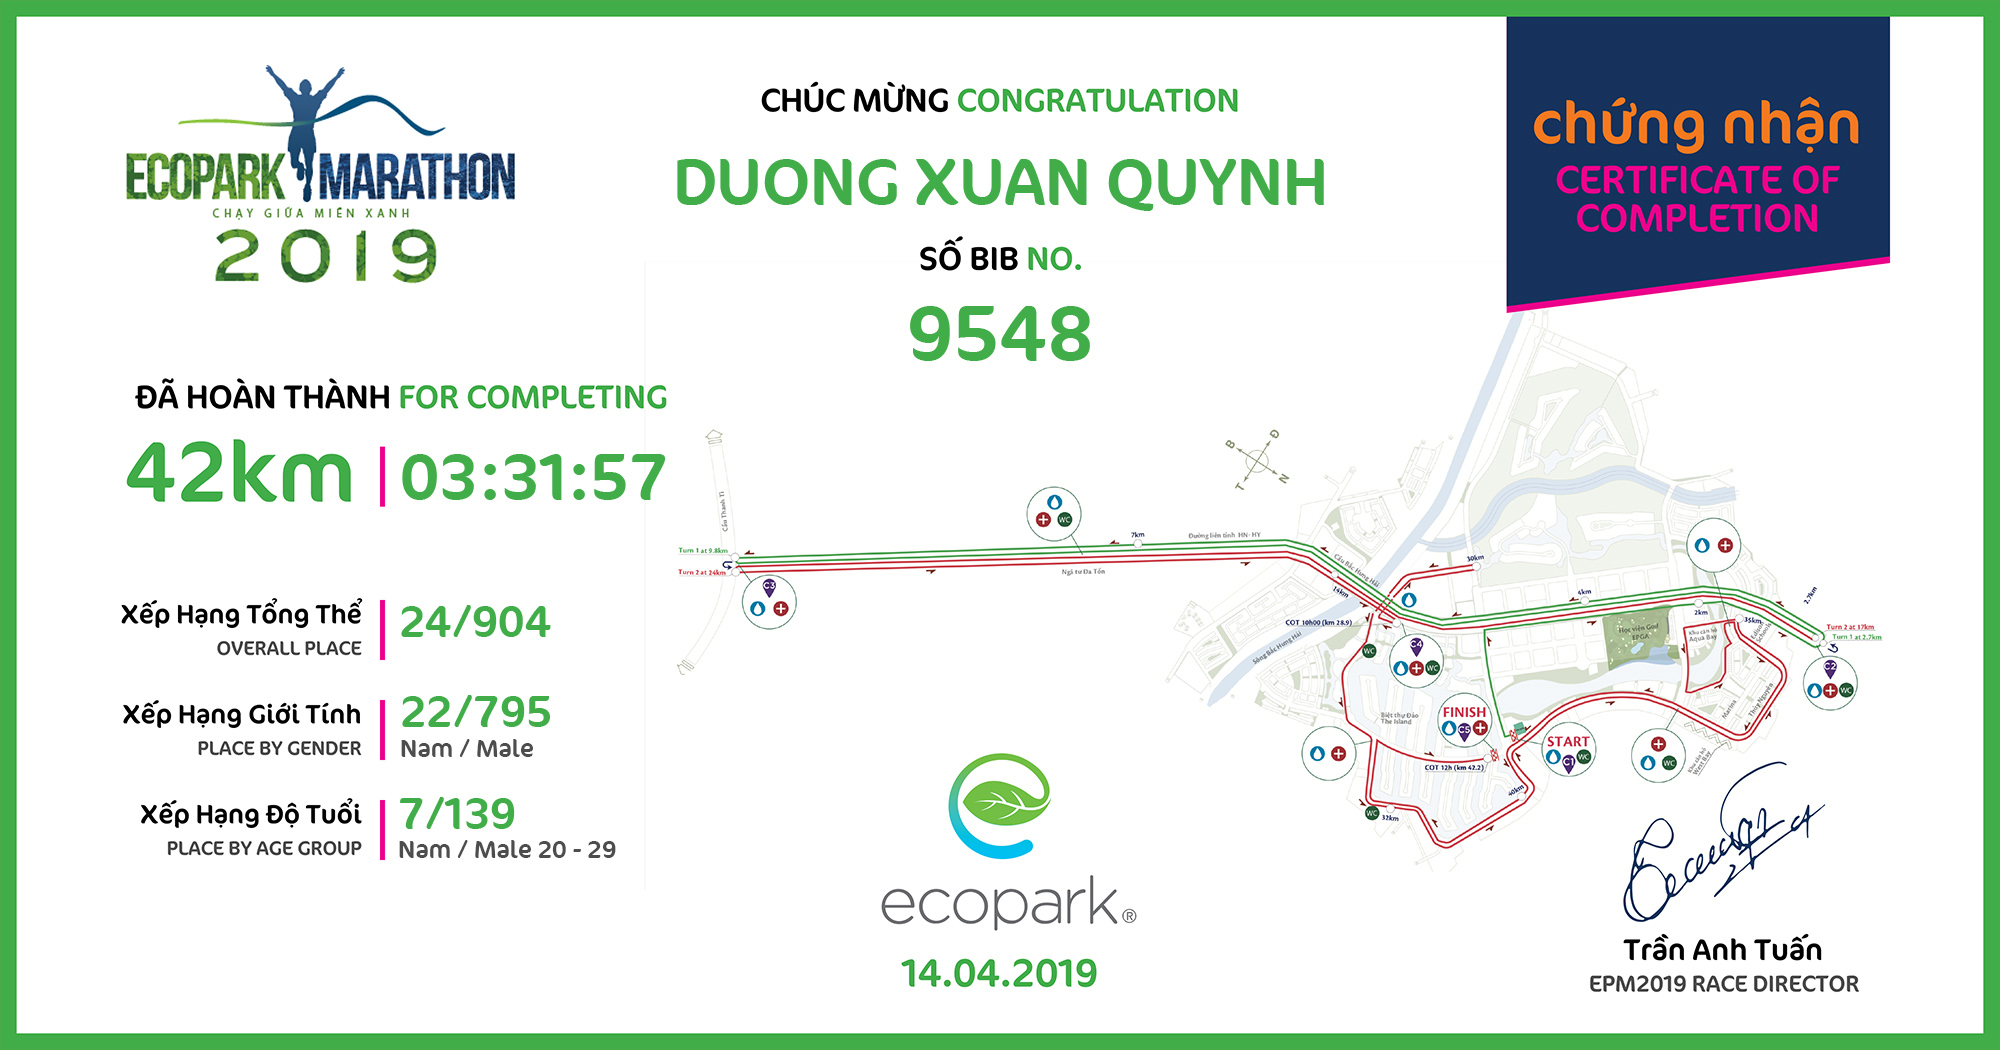 9548 - Duong Xuan Quynh